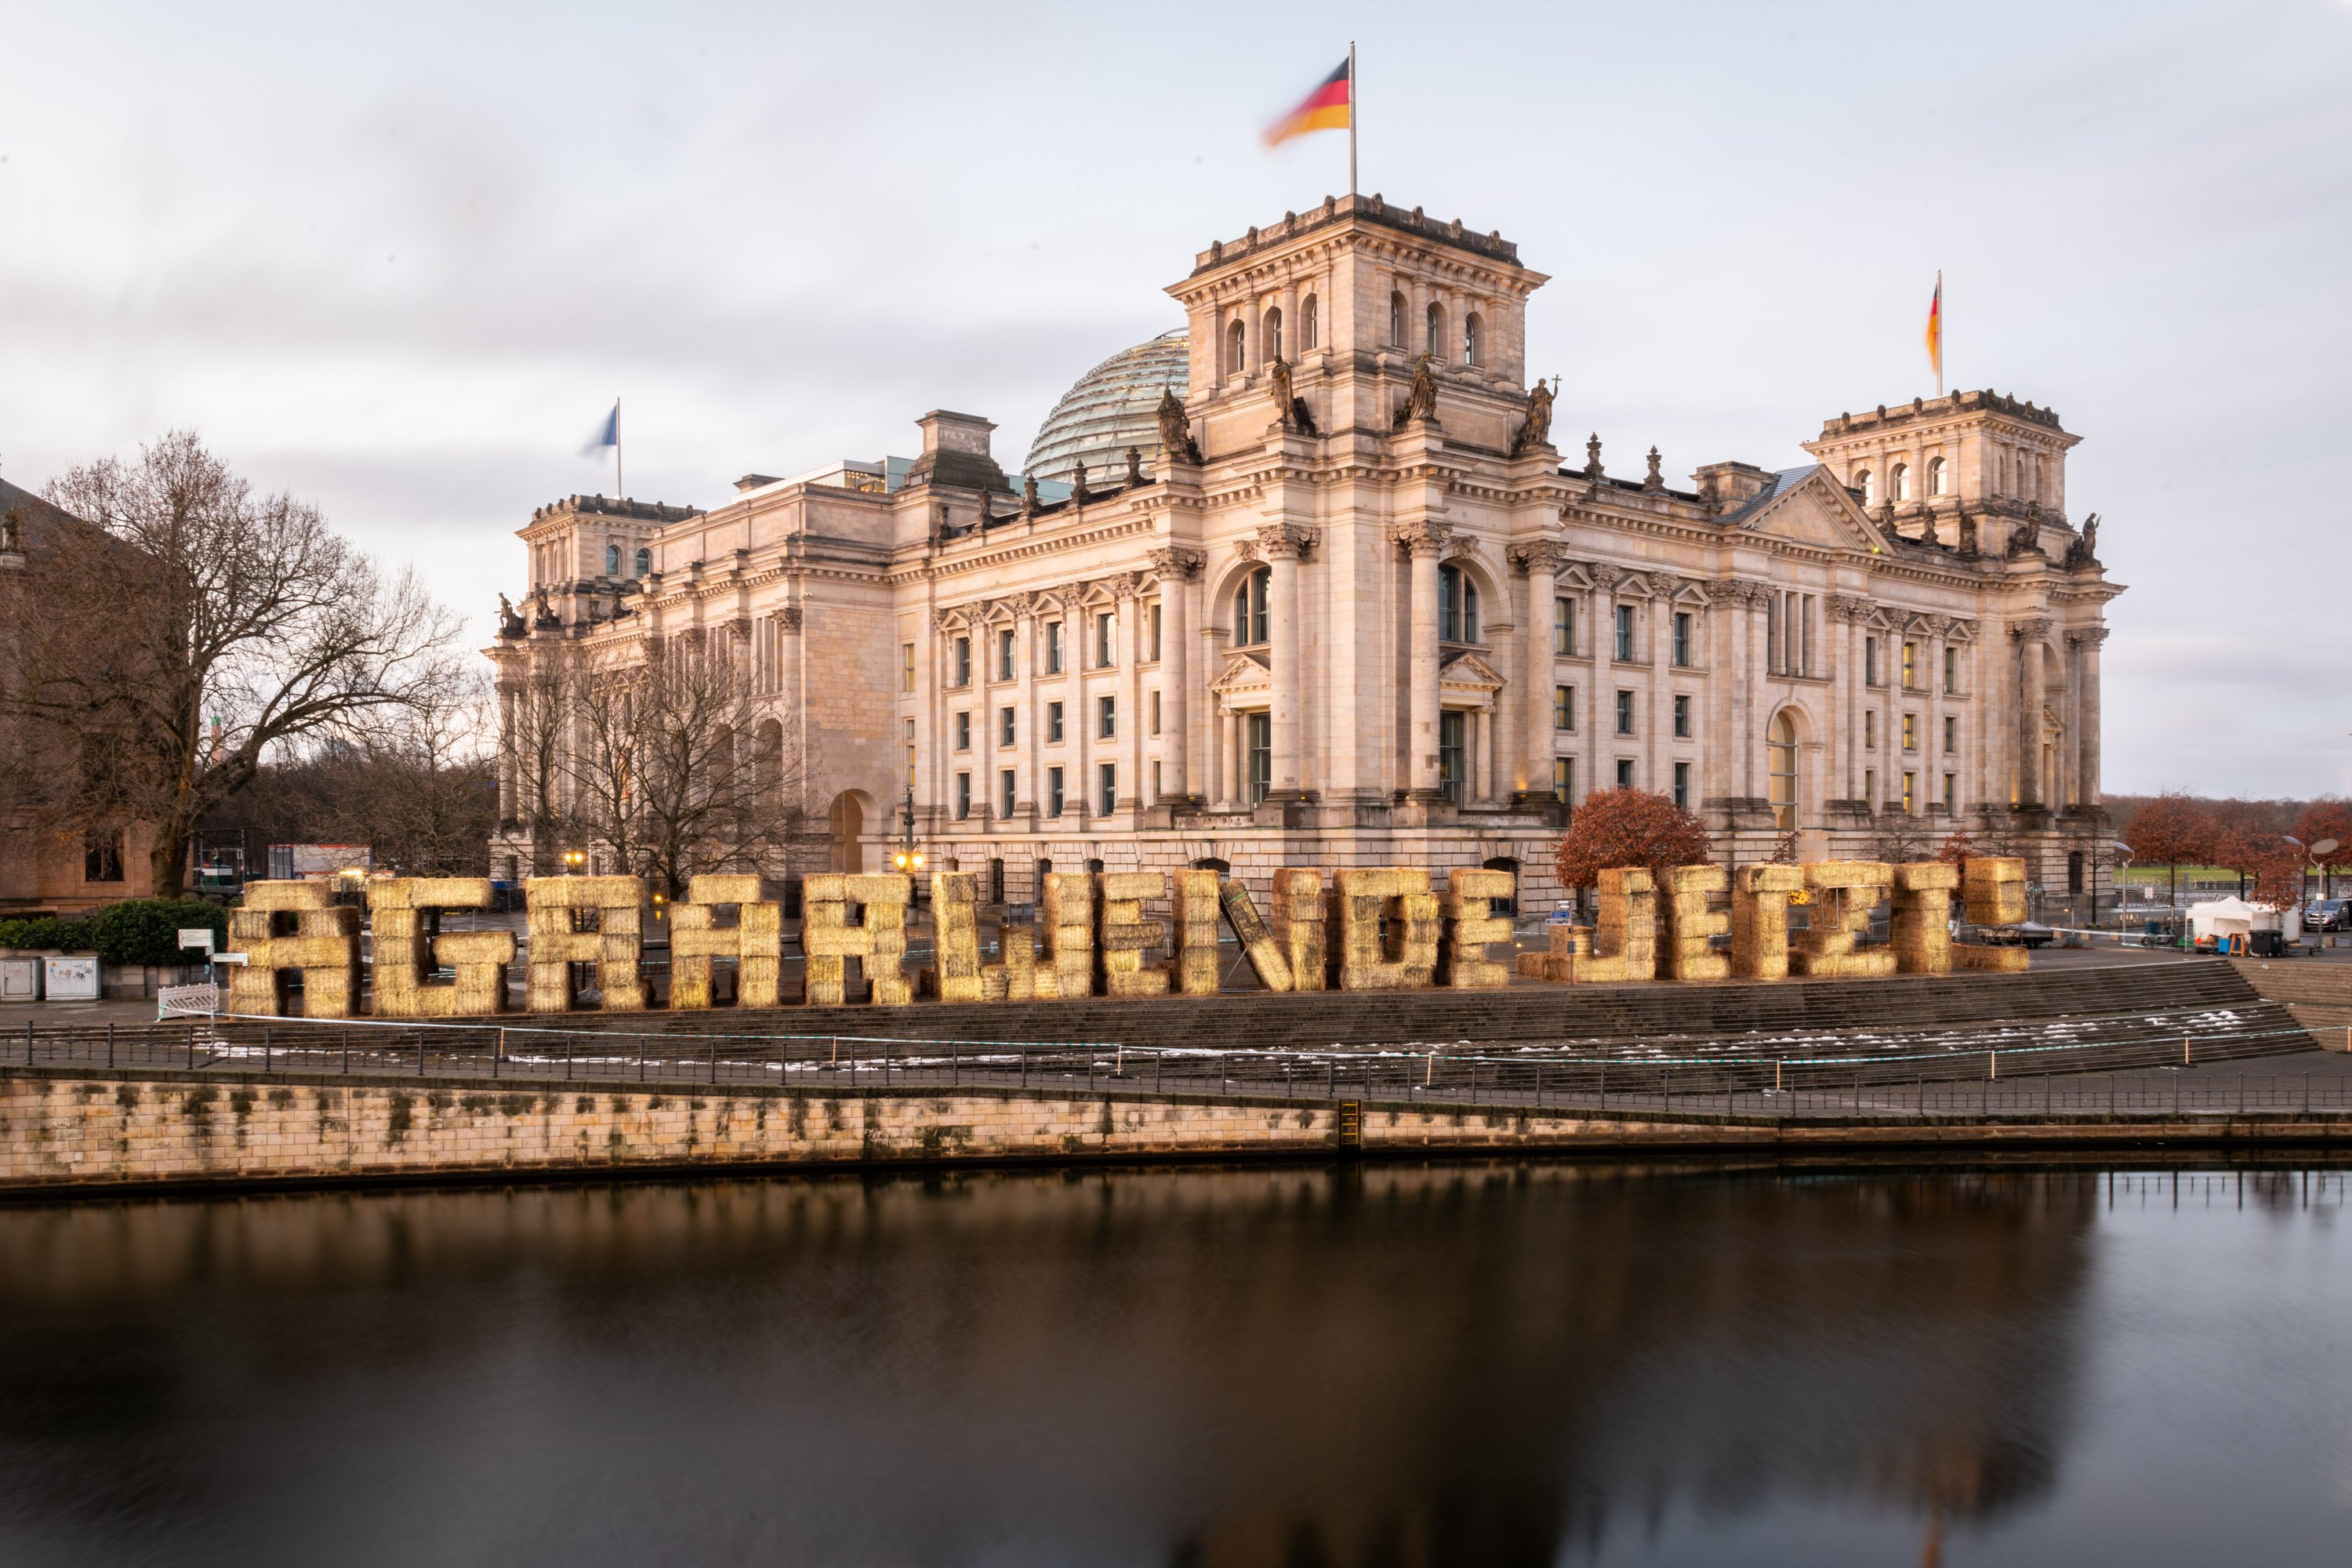 vor dem Reichstag aus Strohballen geformt stehen die Buchstaben "AGRARWENDE JETZT"